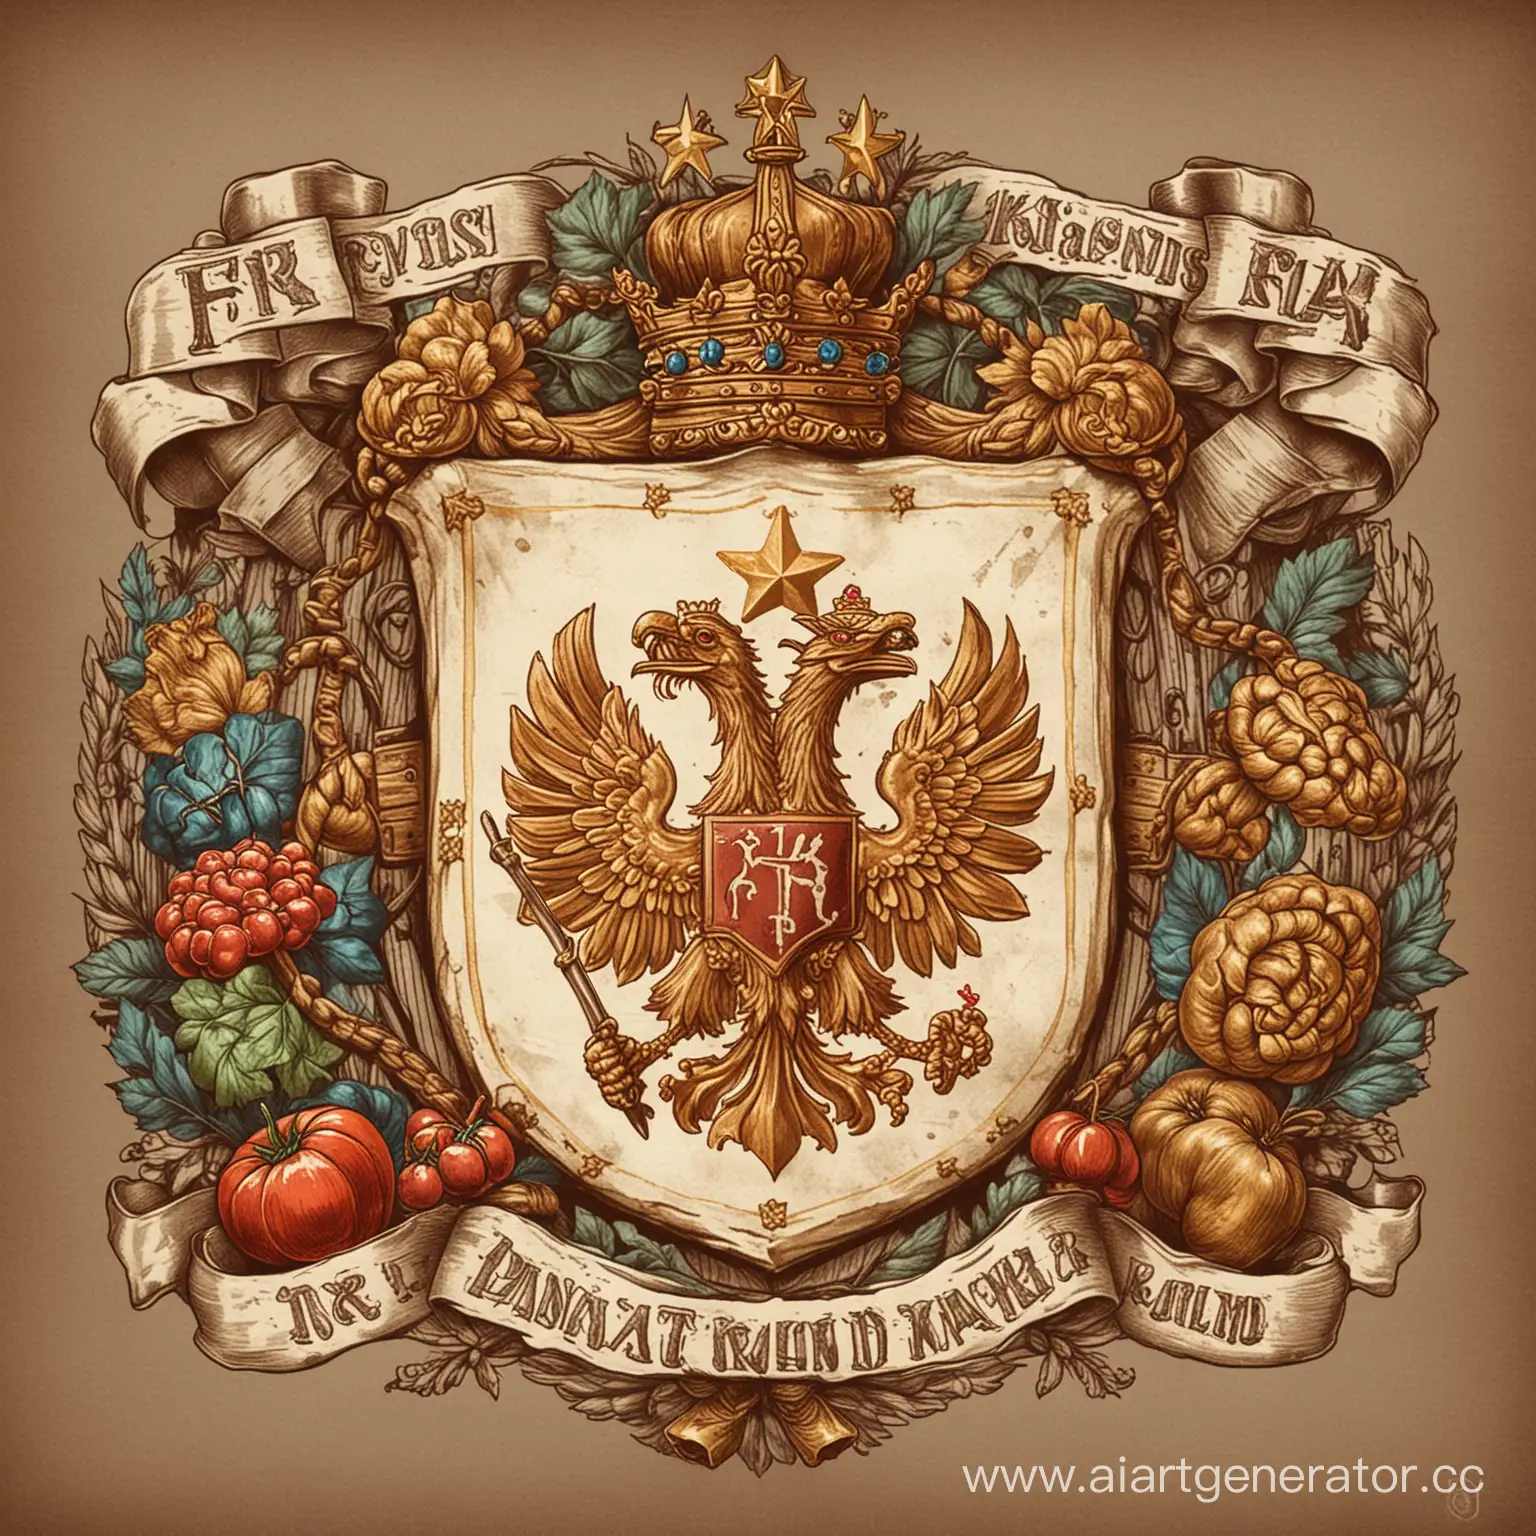 старый нарисоанный от руки простой герб с изображением русской еды, цепей и кулаков